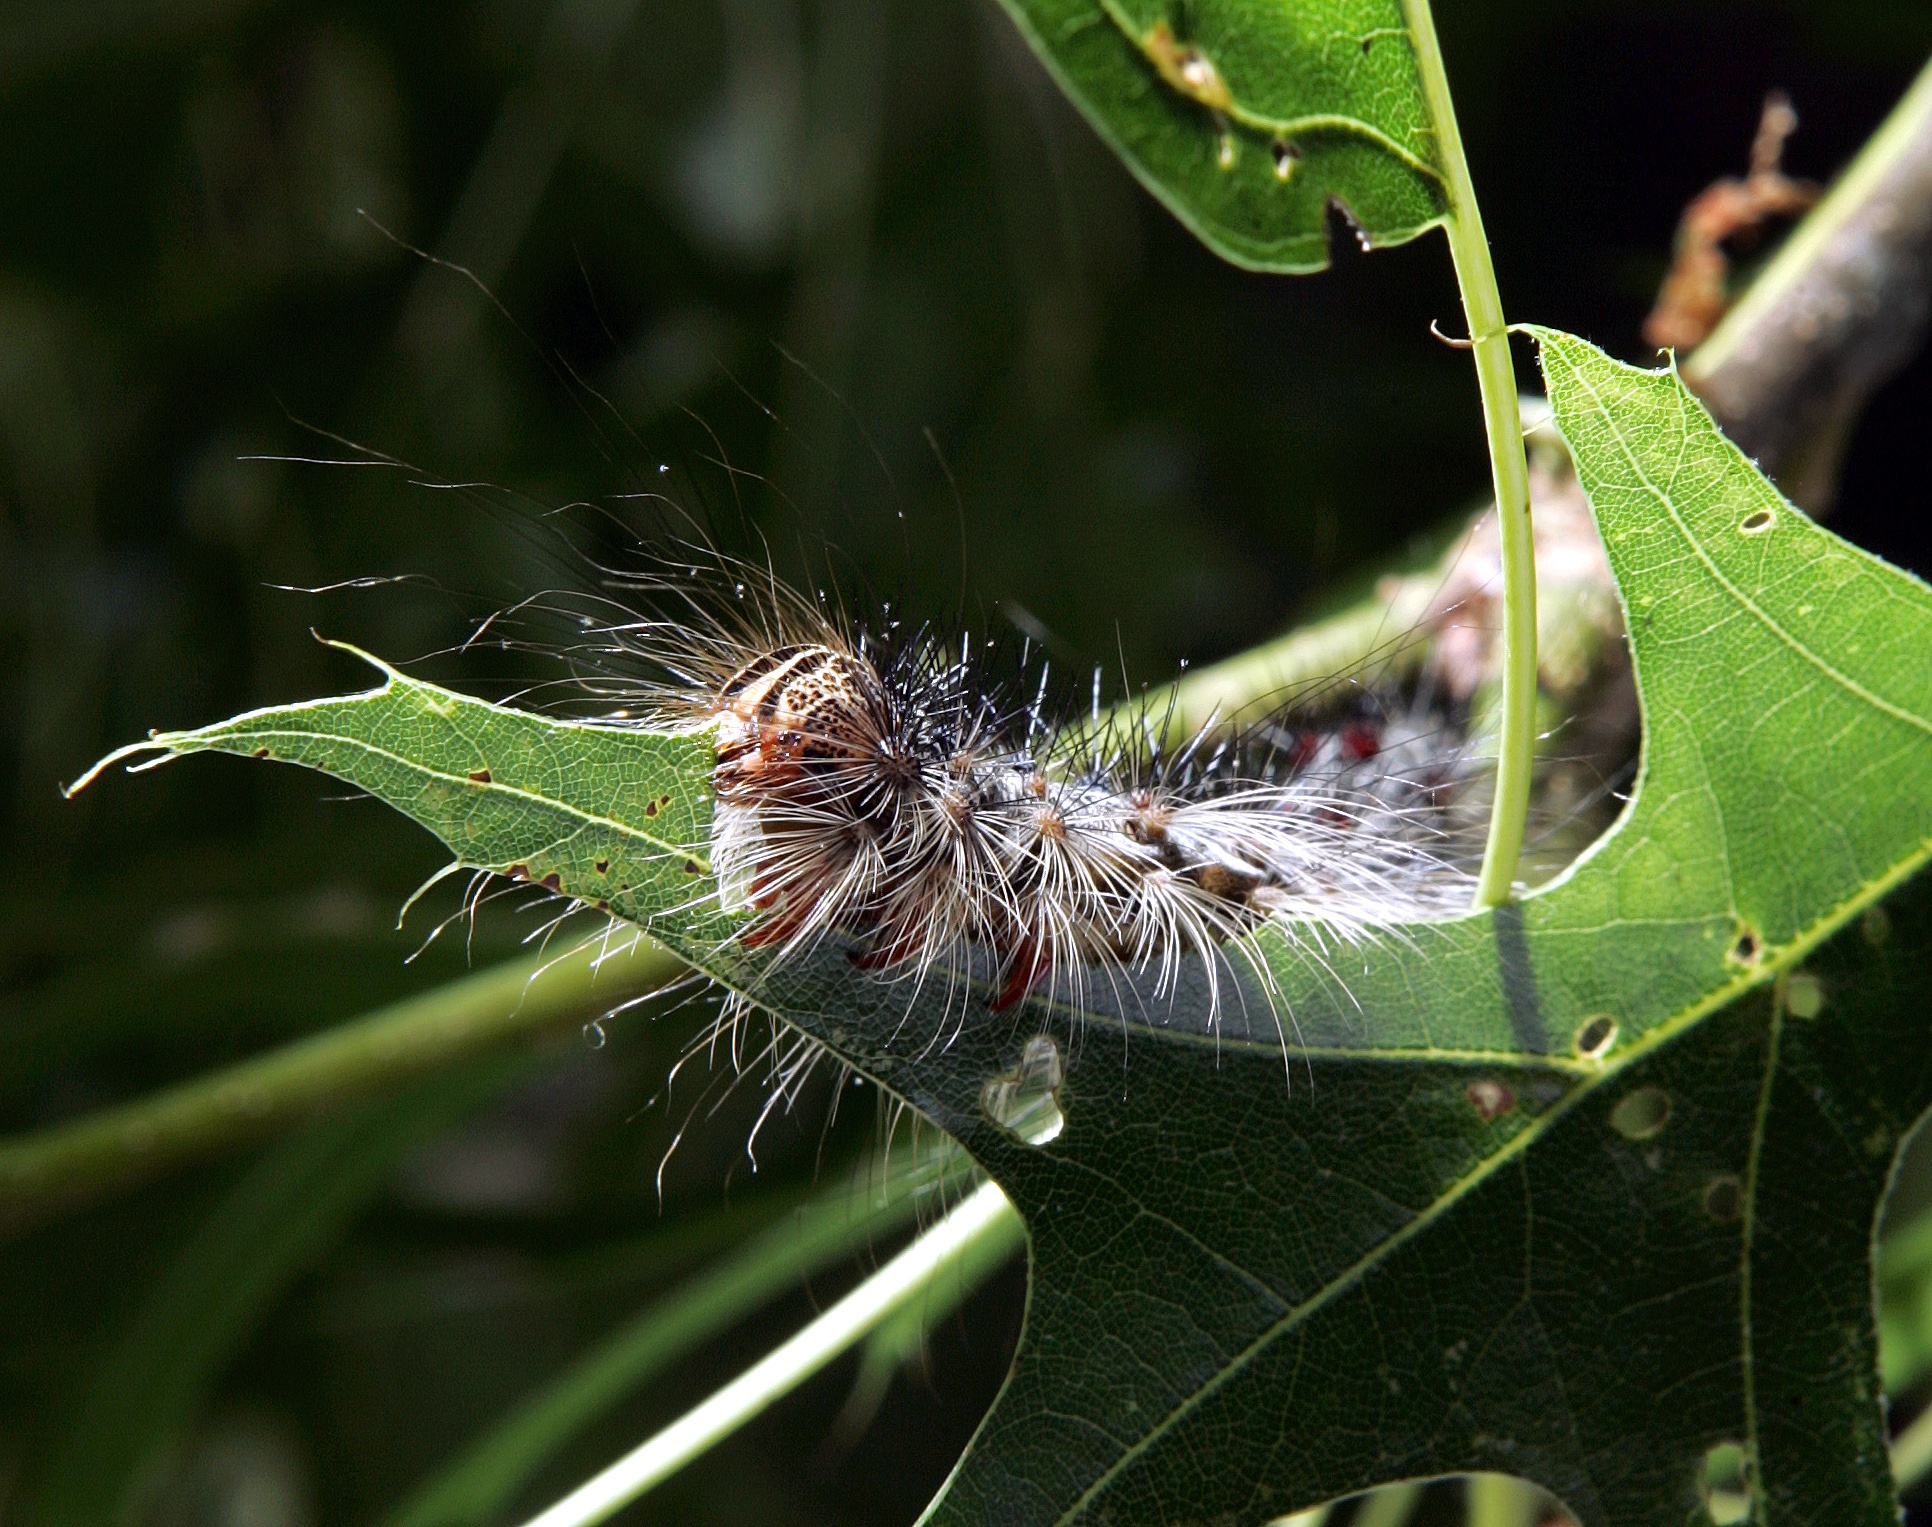 A gypsy moth caterpillar on a leaf.